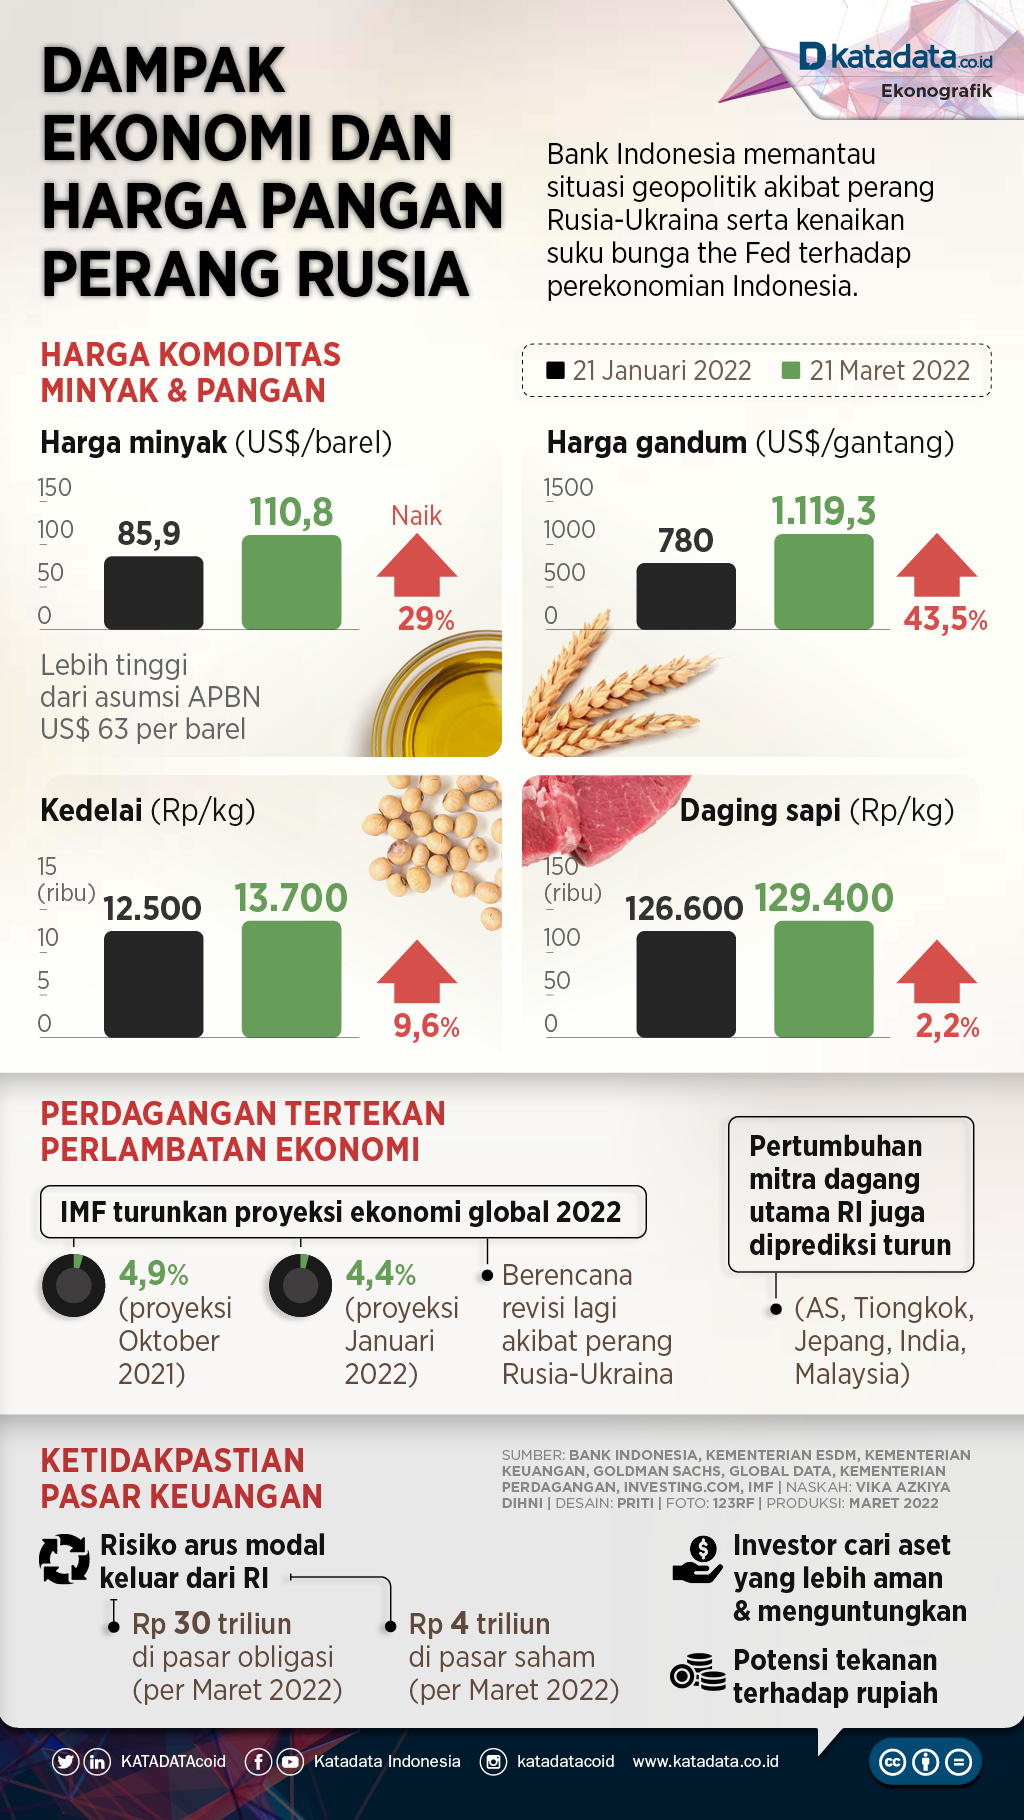 Infografik_Dampak ekonomi dan harga pangan perang rusia